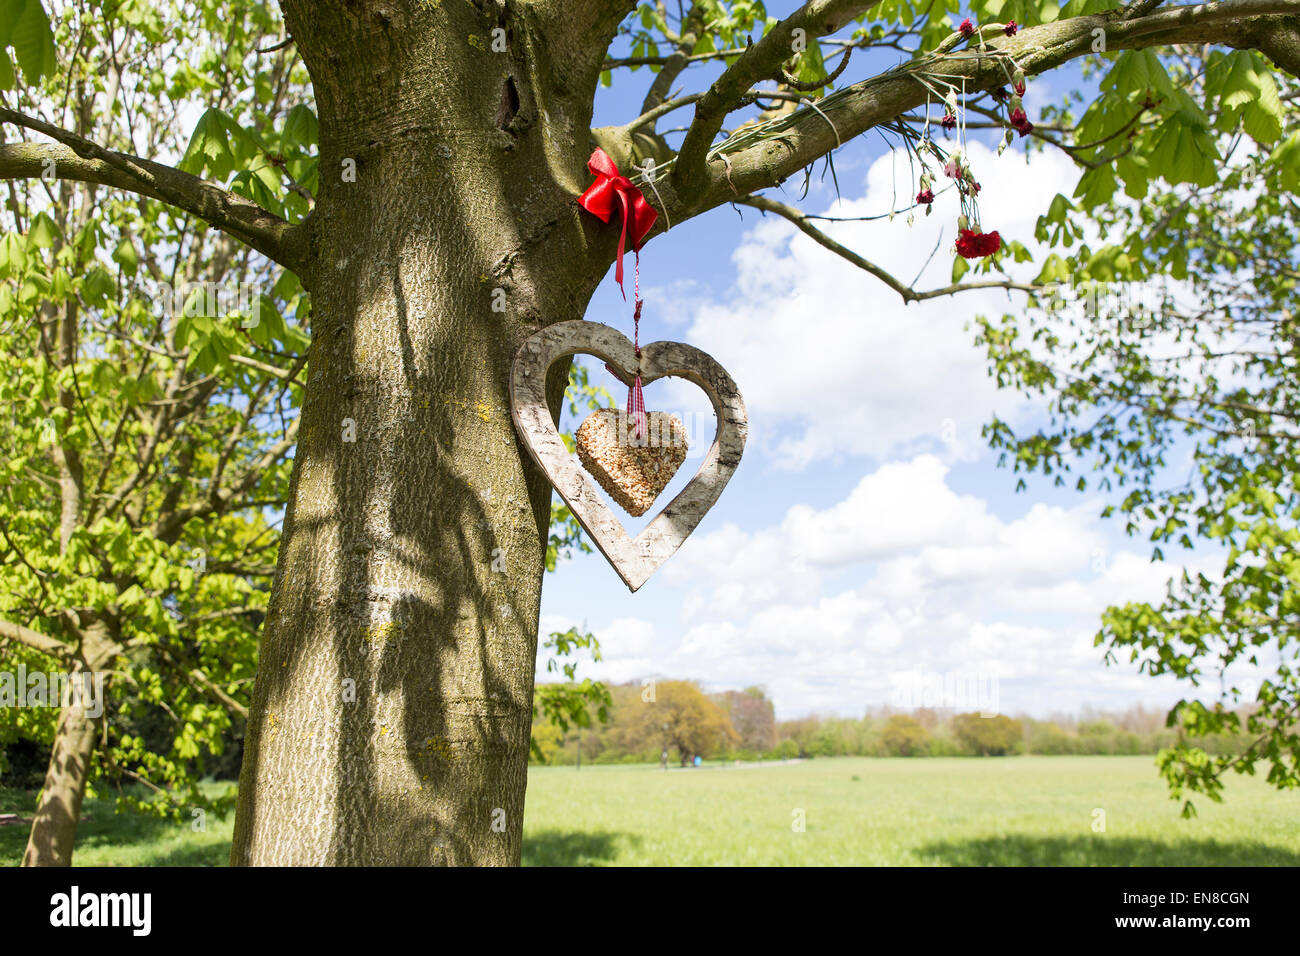 Une mangeoire pour oiseaux en forme de coeur est suspendu à un arbre Banque D'Images